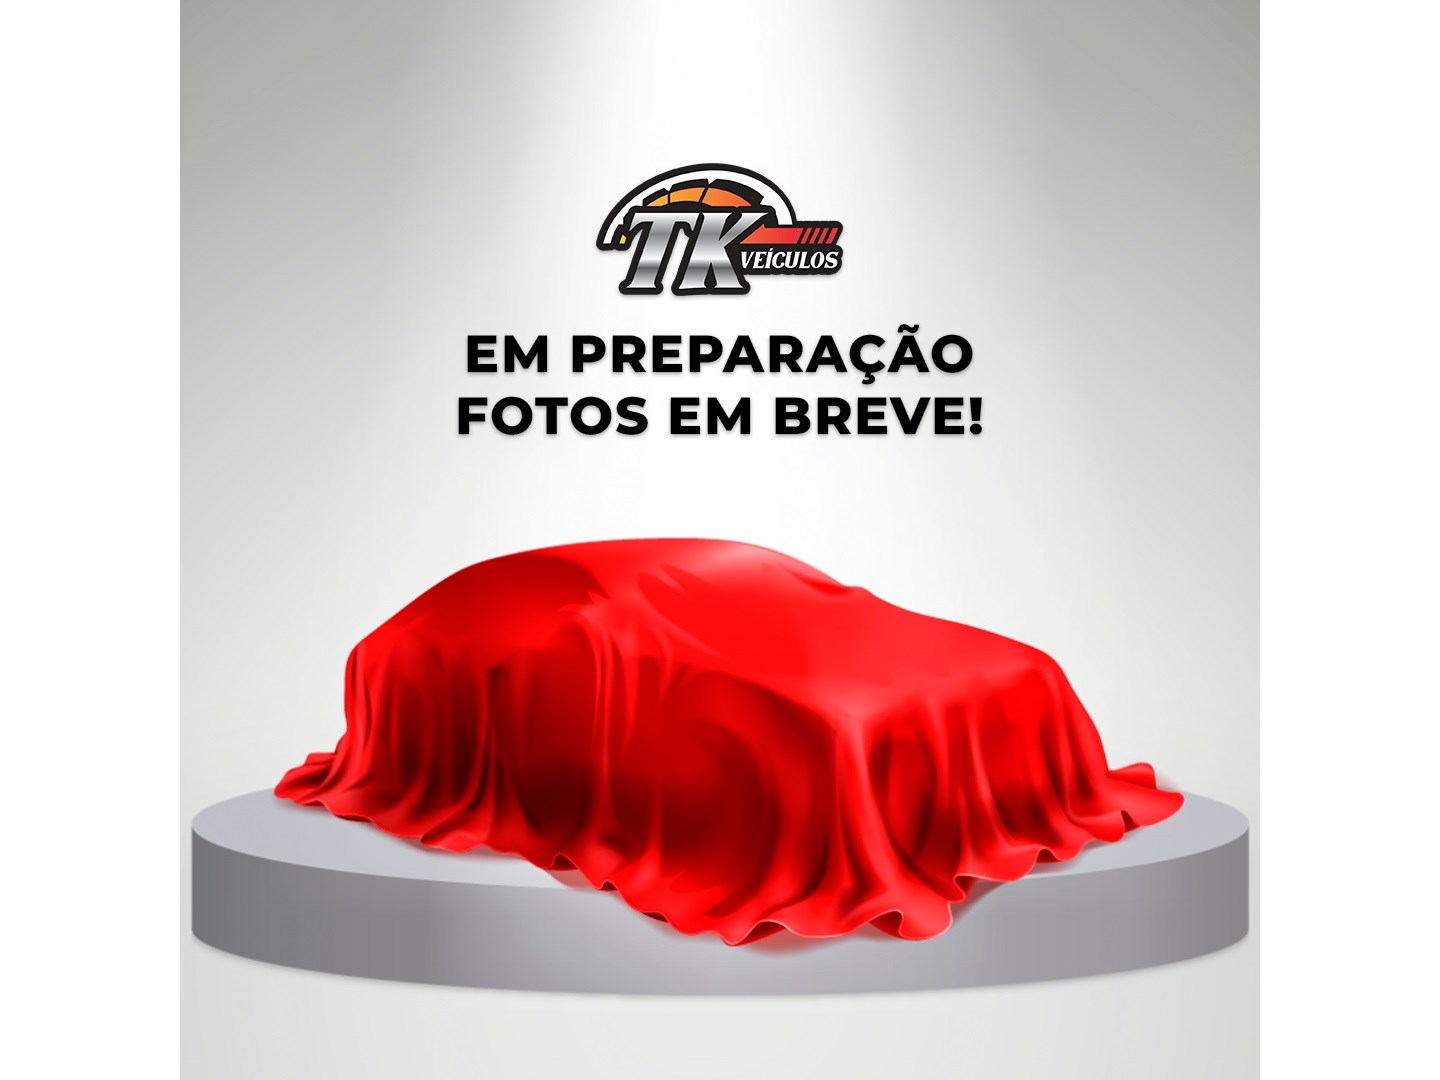 //www.autoline.com.br/carro/ford/fiesta-16-sedan-tivct-titanium-16v-flex-4p-powershif/2014/rio-de-janeiro-rj/23649061